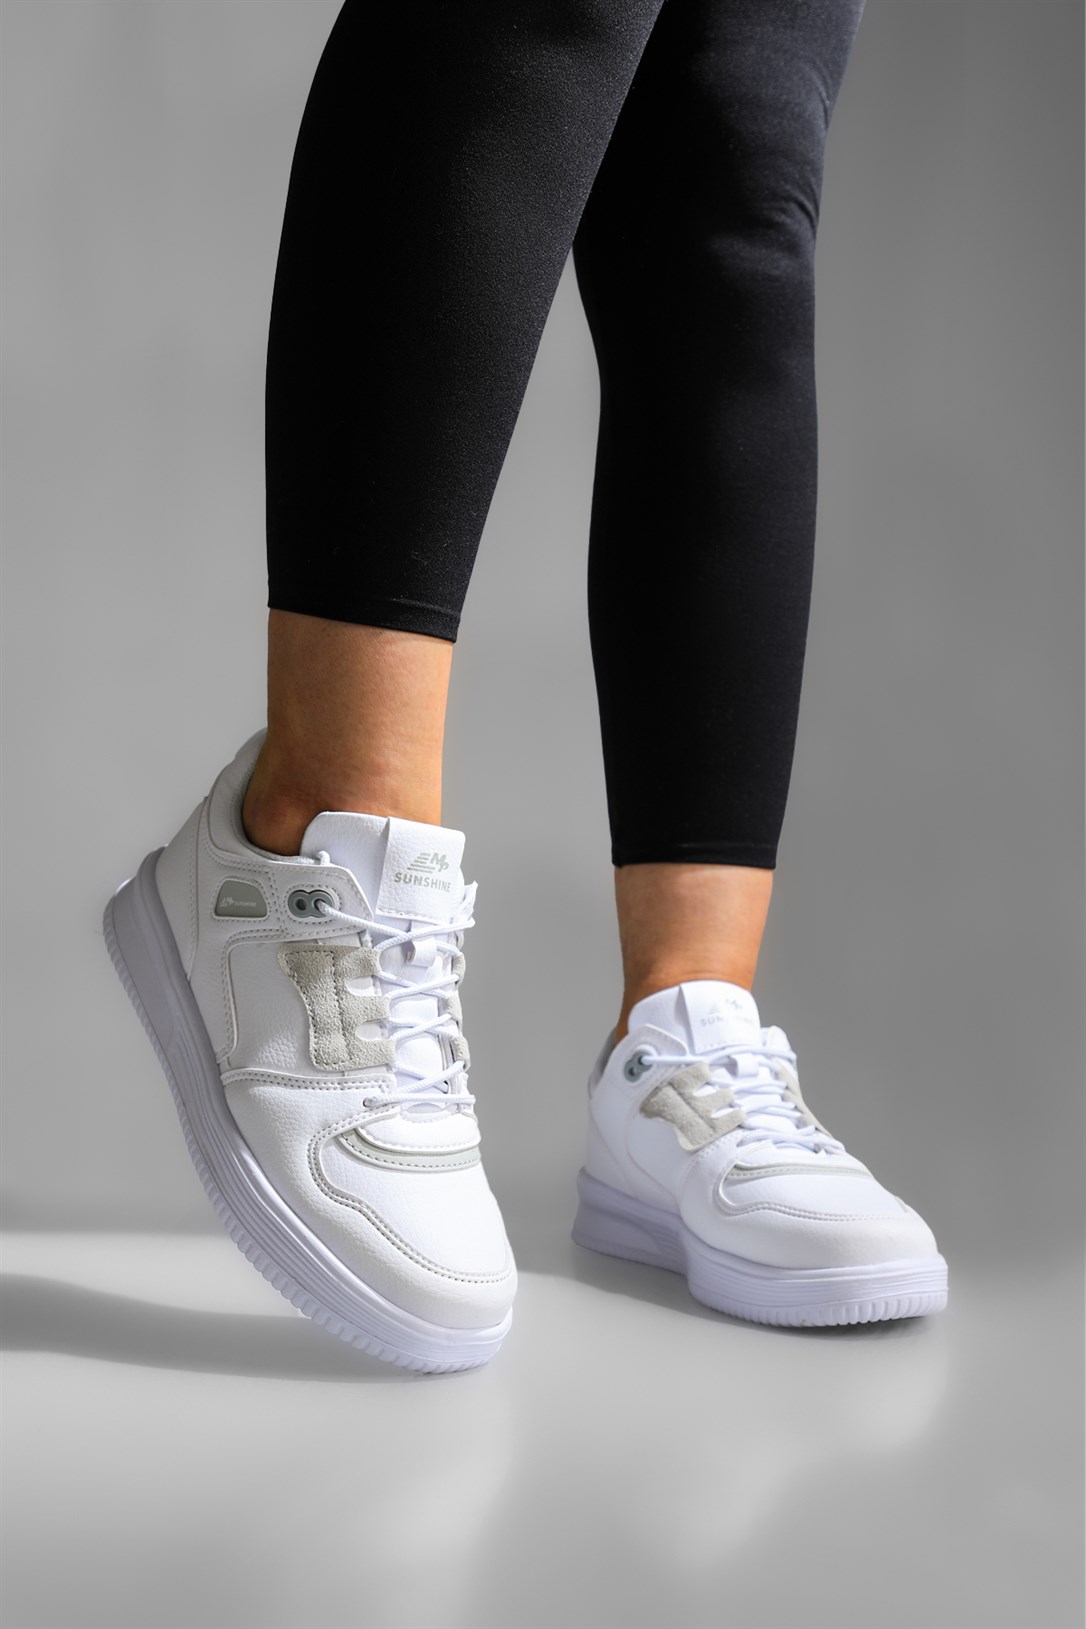 M.P Günlük Rahat Sneaker Beyaz Kadın Spor Ayakkabı 222-2722